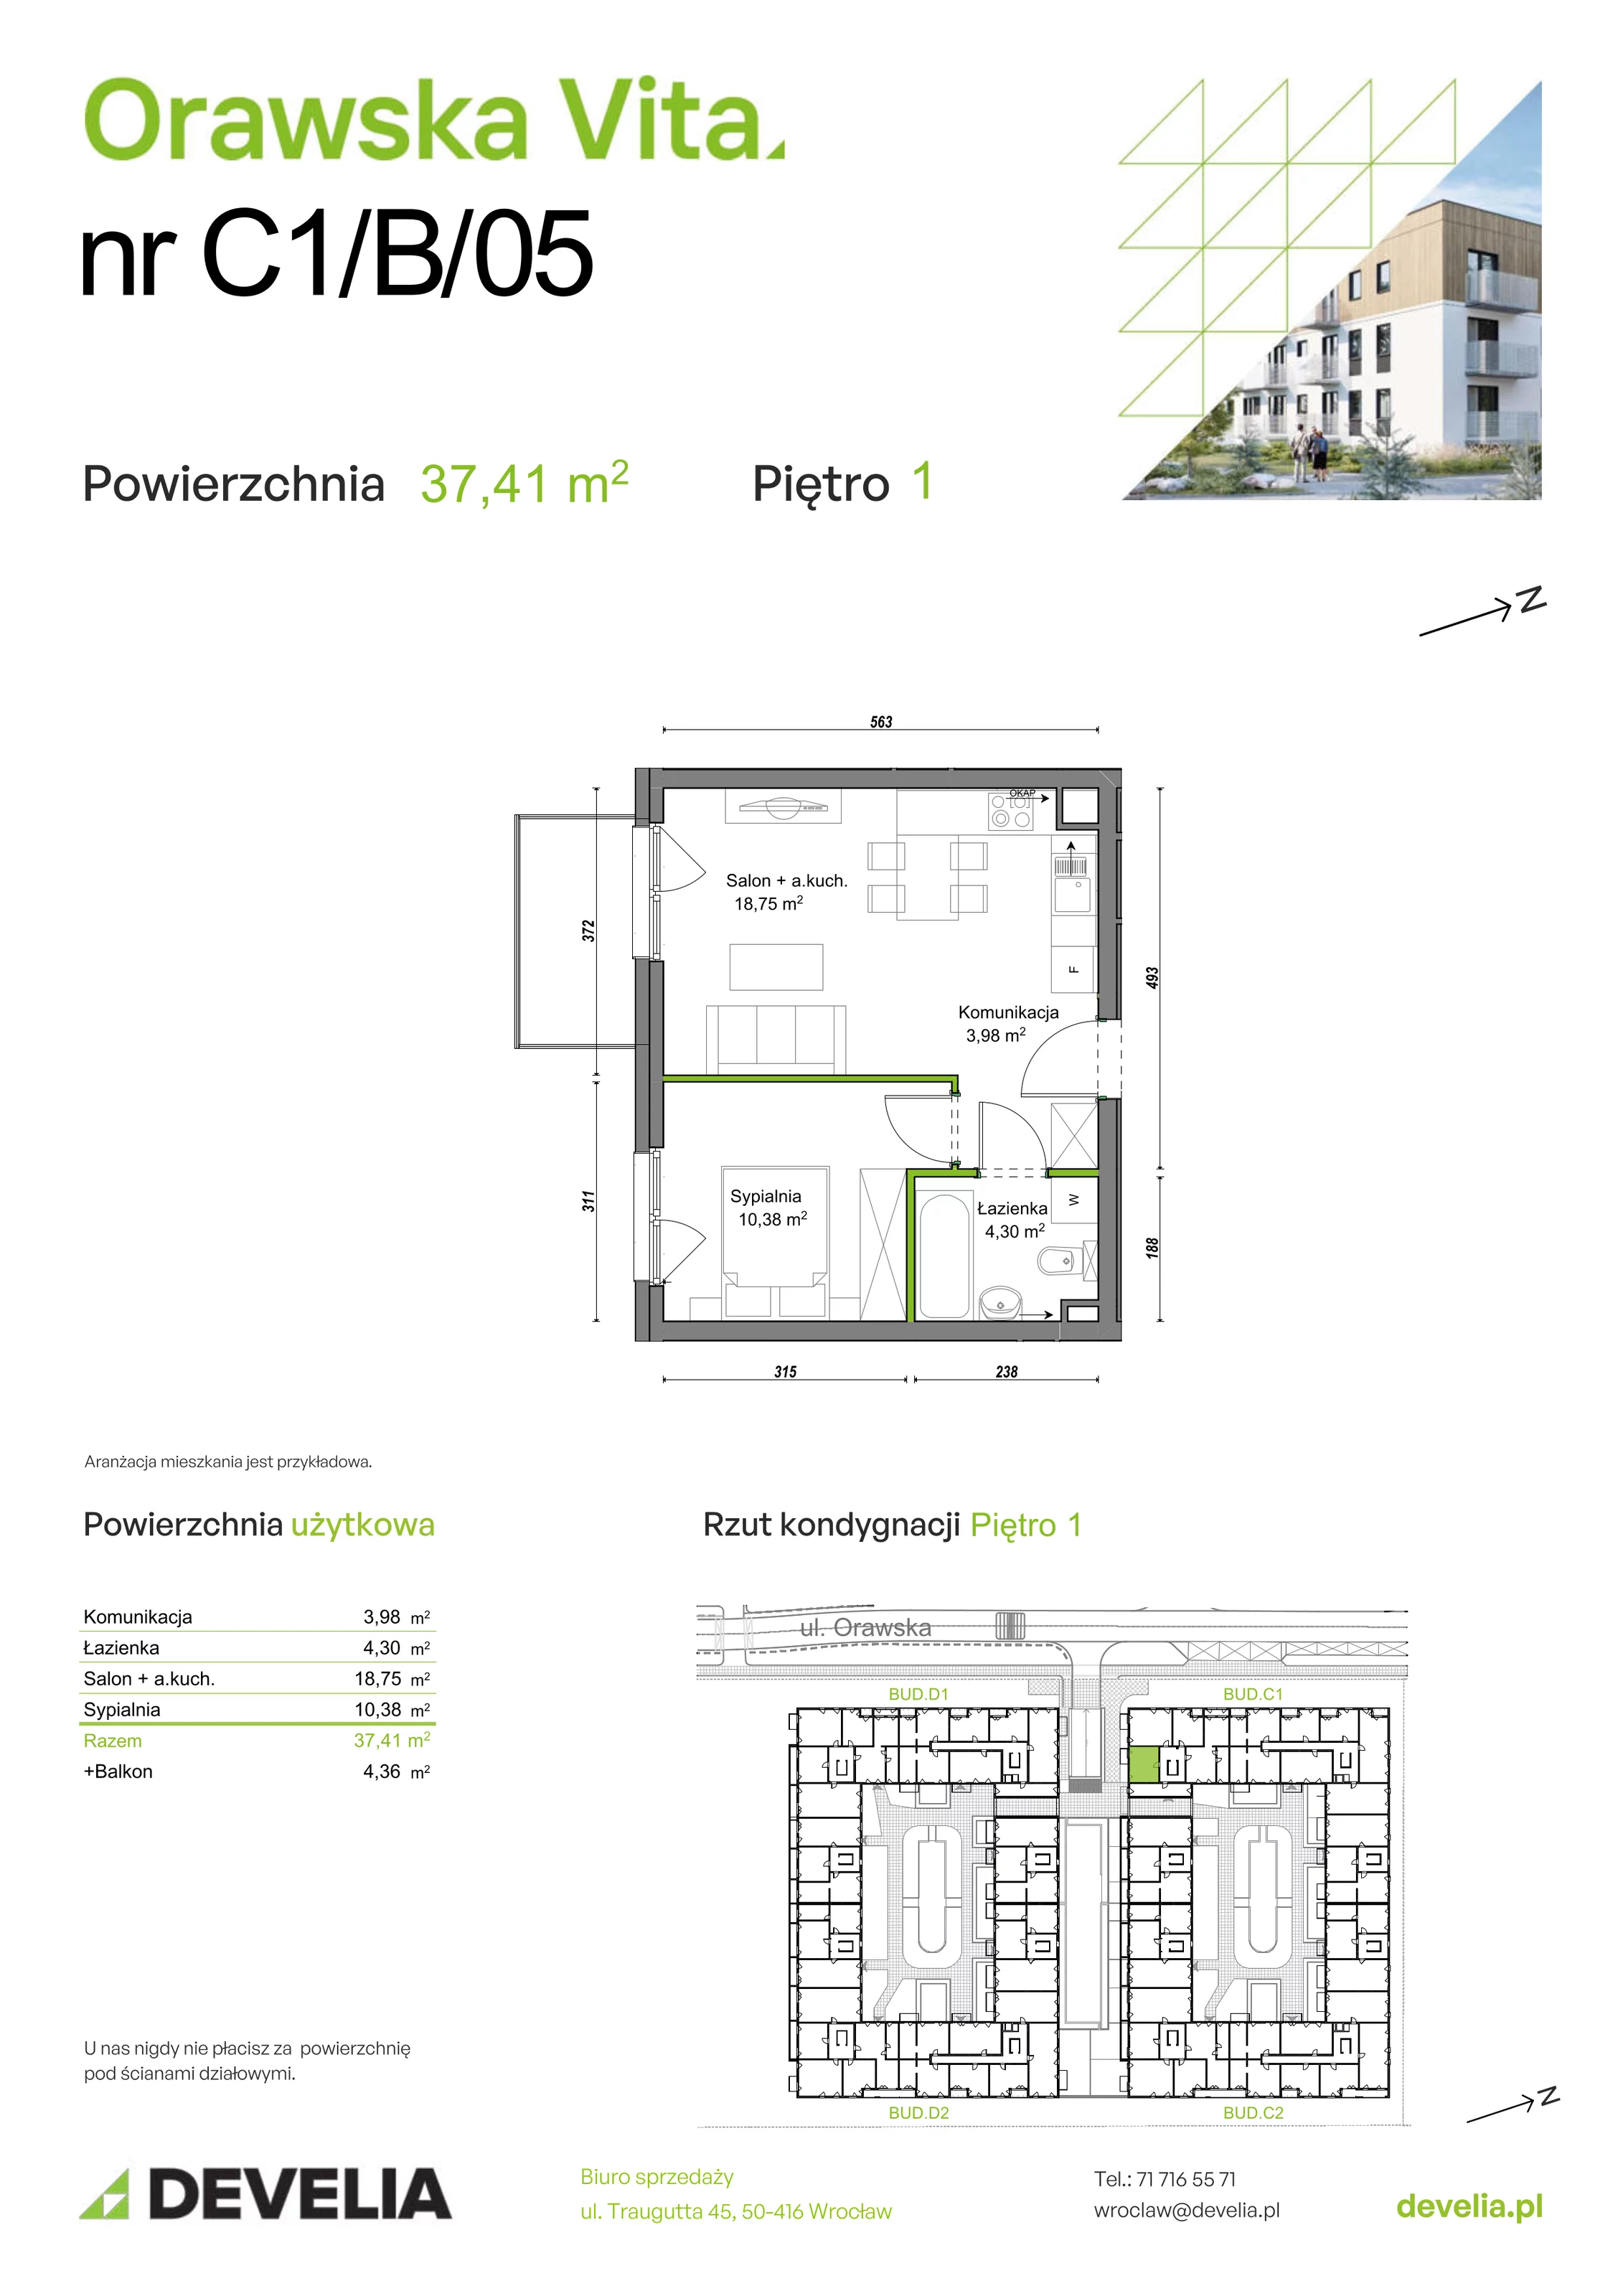 Mieszkanie 37,41 m², piętro 1, oferta nr C1/B/05, Orawska Vita, Wrocław, Ołtaszyn, Krzyki, ul. Orawska 73